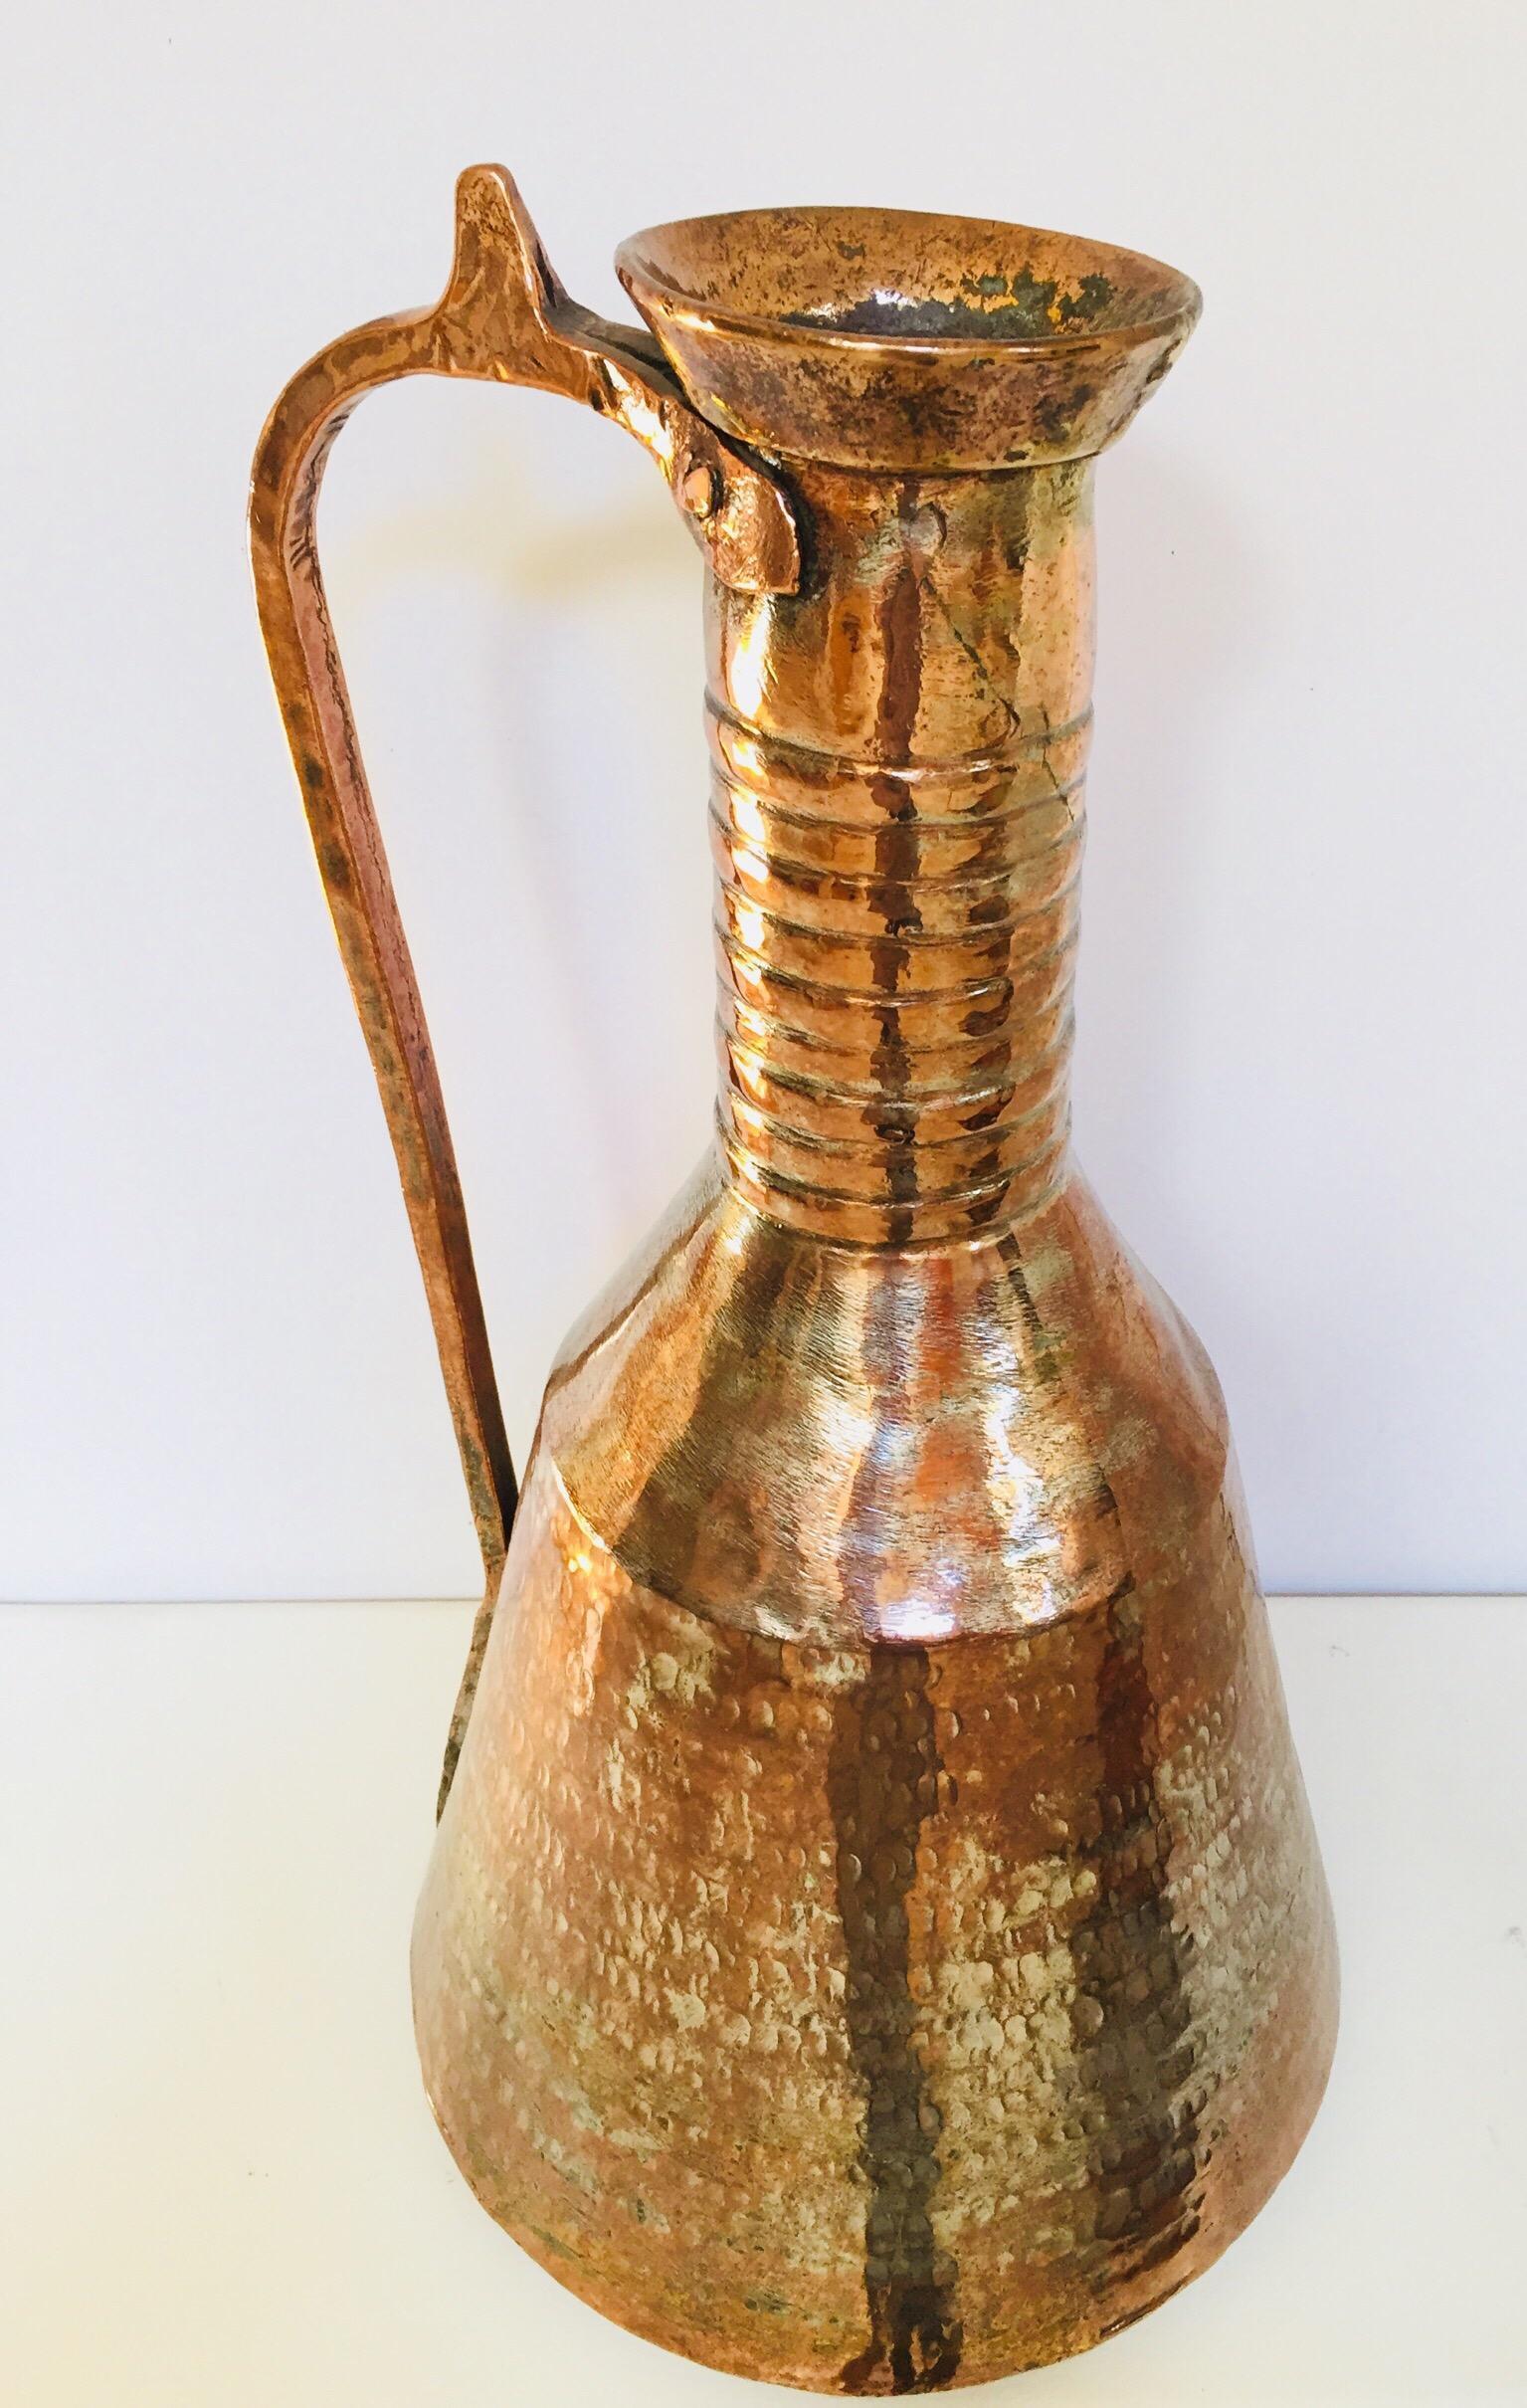 Jarre à eau en cuivre étamé du Moyen-Orient perse du 19e siècle avec poignée.
Aiguière arabe mauresque, récipient en cuivre étamé en métal lourd, martelé à la main et muni d'une poignée en laiton.
Vase à eau traditionnel du Moyen-Orient et de